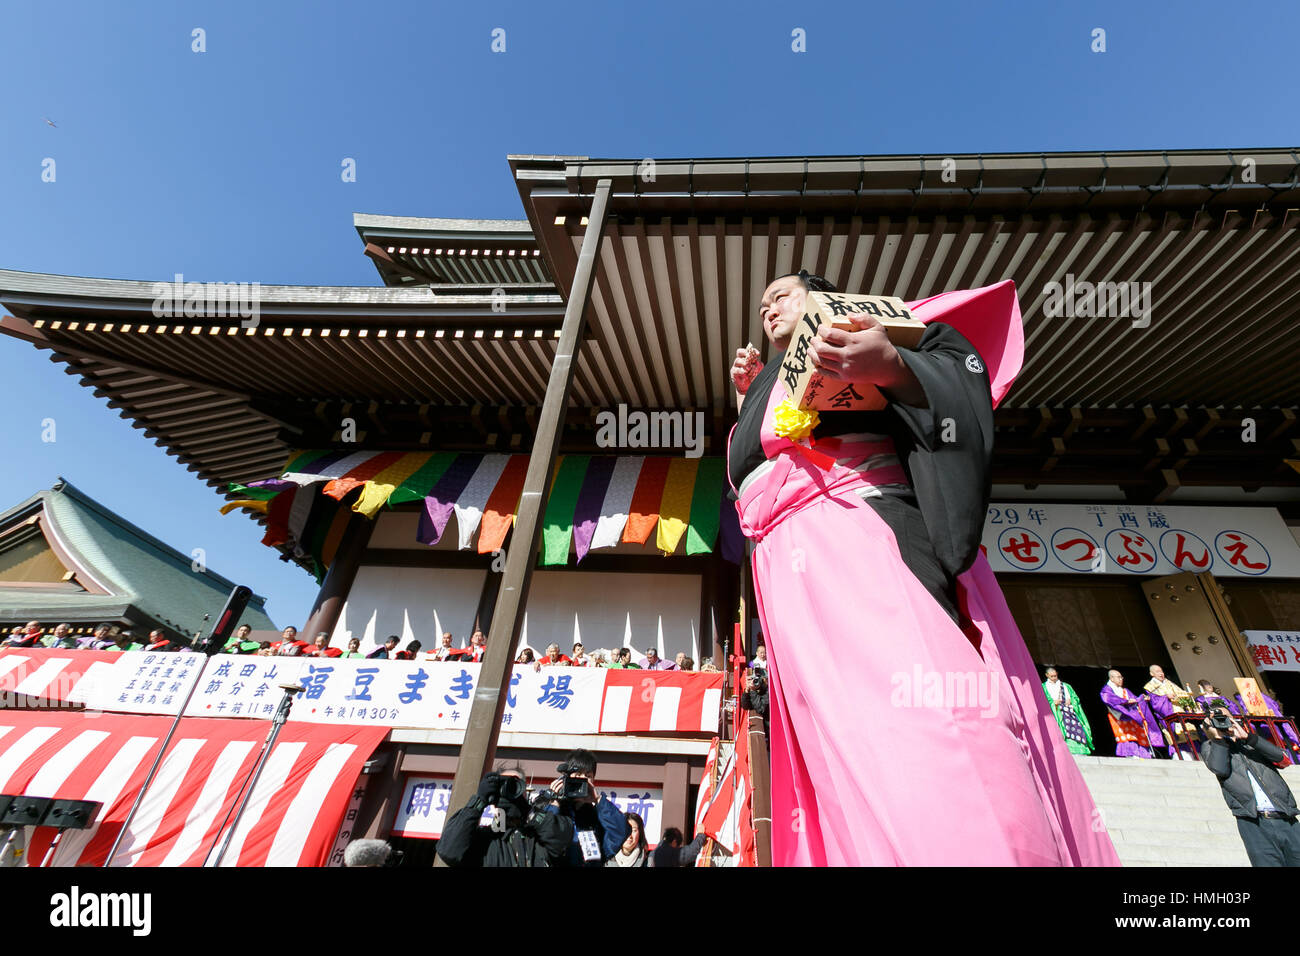 Il lottatore di Sumo e new Grand Champion Yokozuna, Kisenosato, prende parte al festival Setsubun a Naritasan Shinshoji Temple il 3 febbraio 2017, a Chiba, Giappone. Setsubun è un festival annuale celebrata il 3 febbraio segna il giorno prima dell'inizio della primavera. Famiglie giapponesi gettano i semi di soia di uscire di casa per allontanare gli spiriti maligni e nella casa di invitare buona fortuna. Gli attori giapponesi e lottatori di sumo sono invitati a partecipare alla cerimonia per la consegna Naritasan Shinshoji tempio che detiene uno dei più grandi eventi in Giappone. Credito: Rodrigo Reyes Marin/AFLO/Alamy Live News Foto Stock